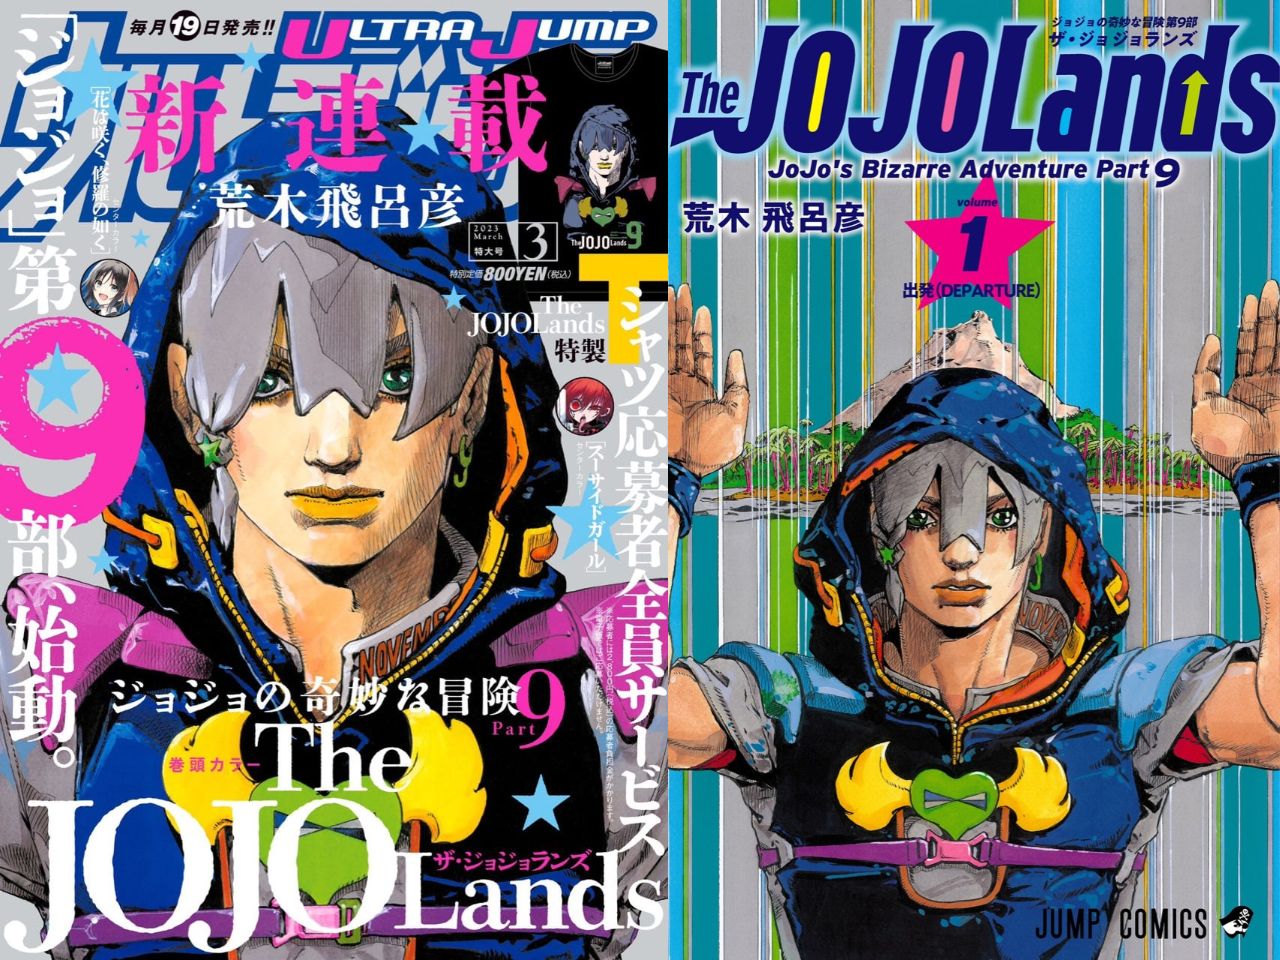 荒木飛呂彦「JOJOLands (ジョジョランズ)」最新刊 第2巻 12月19日発売!